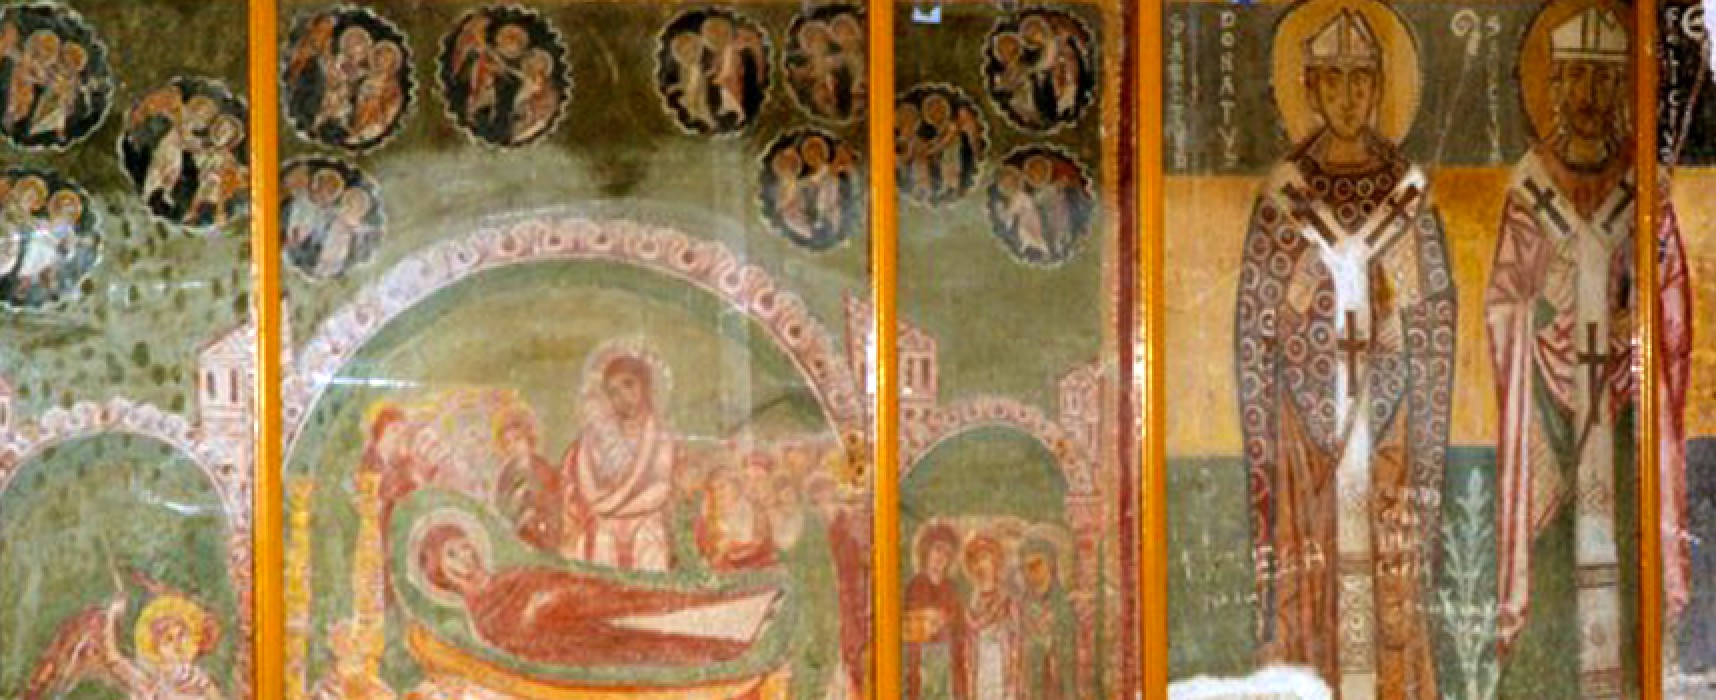 Domenica la fiera di Giano, Maria Luisa De Toma spiega come sono stati salvati gli affreschi